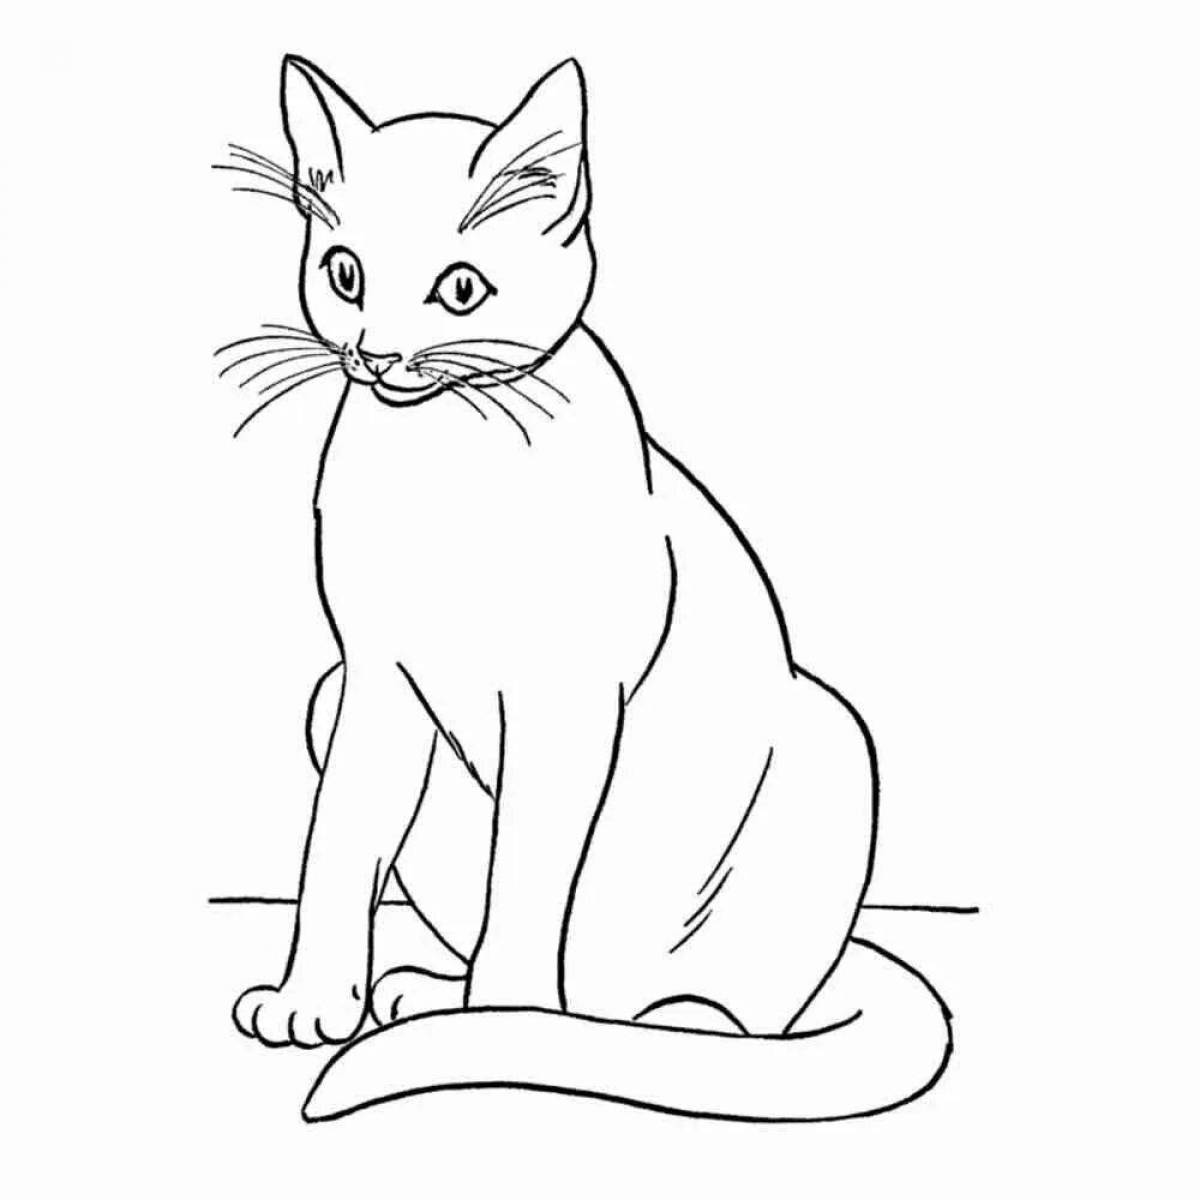 Яркая страница раскраски большой кошки